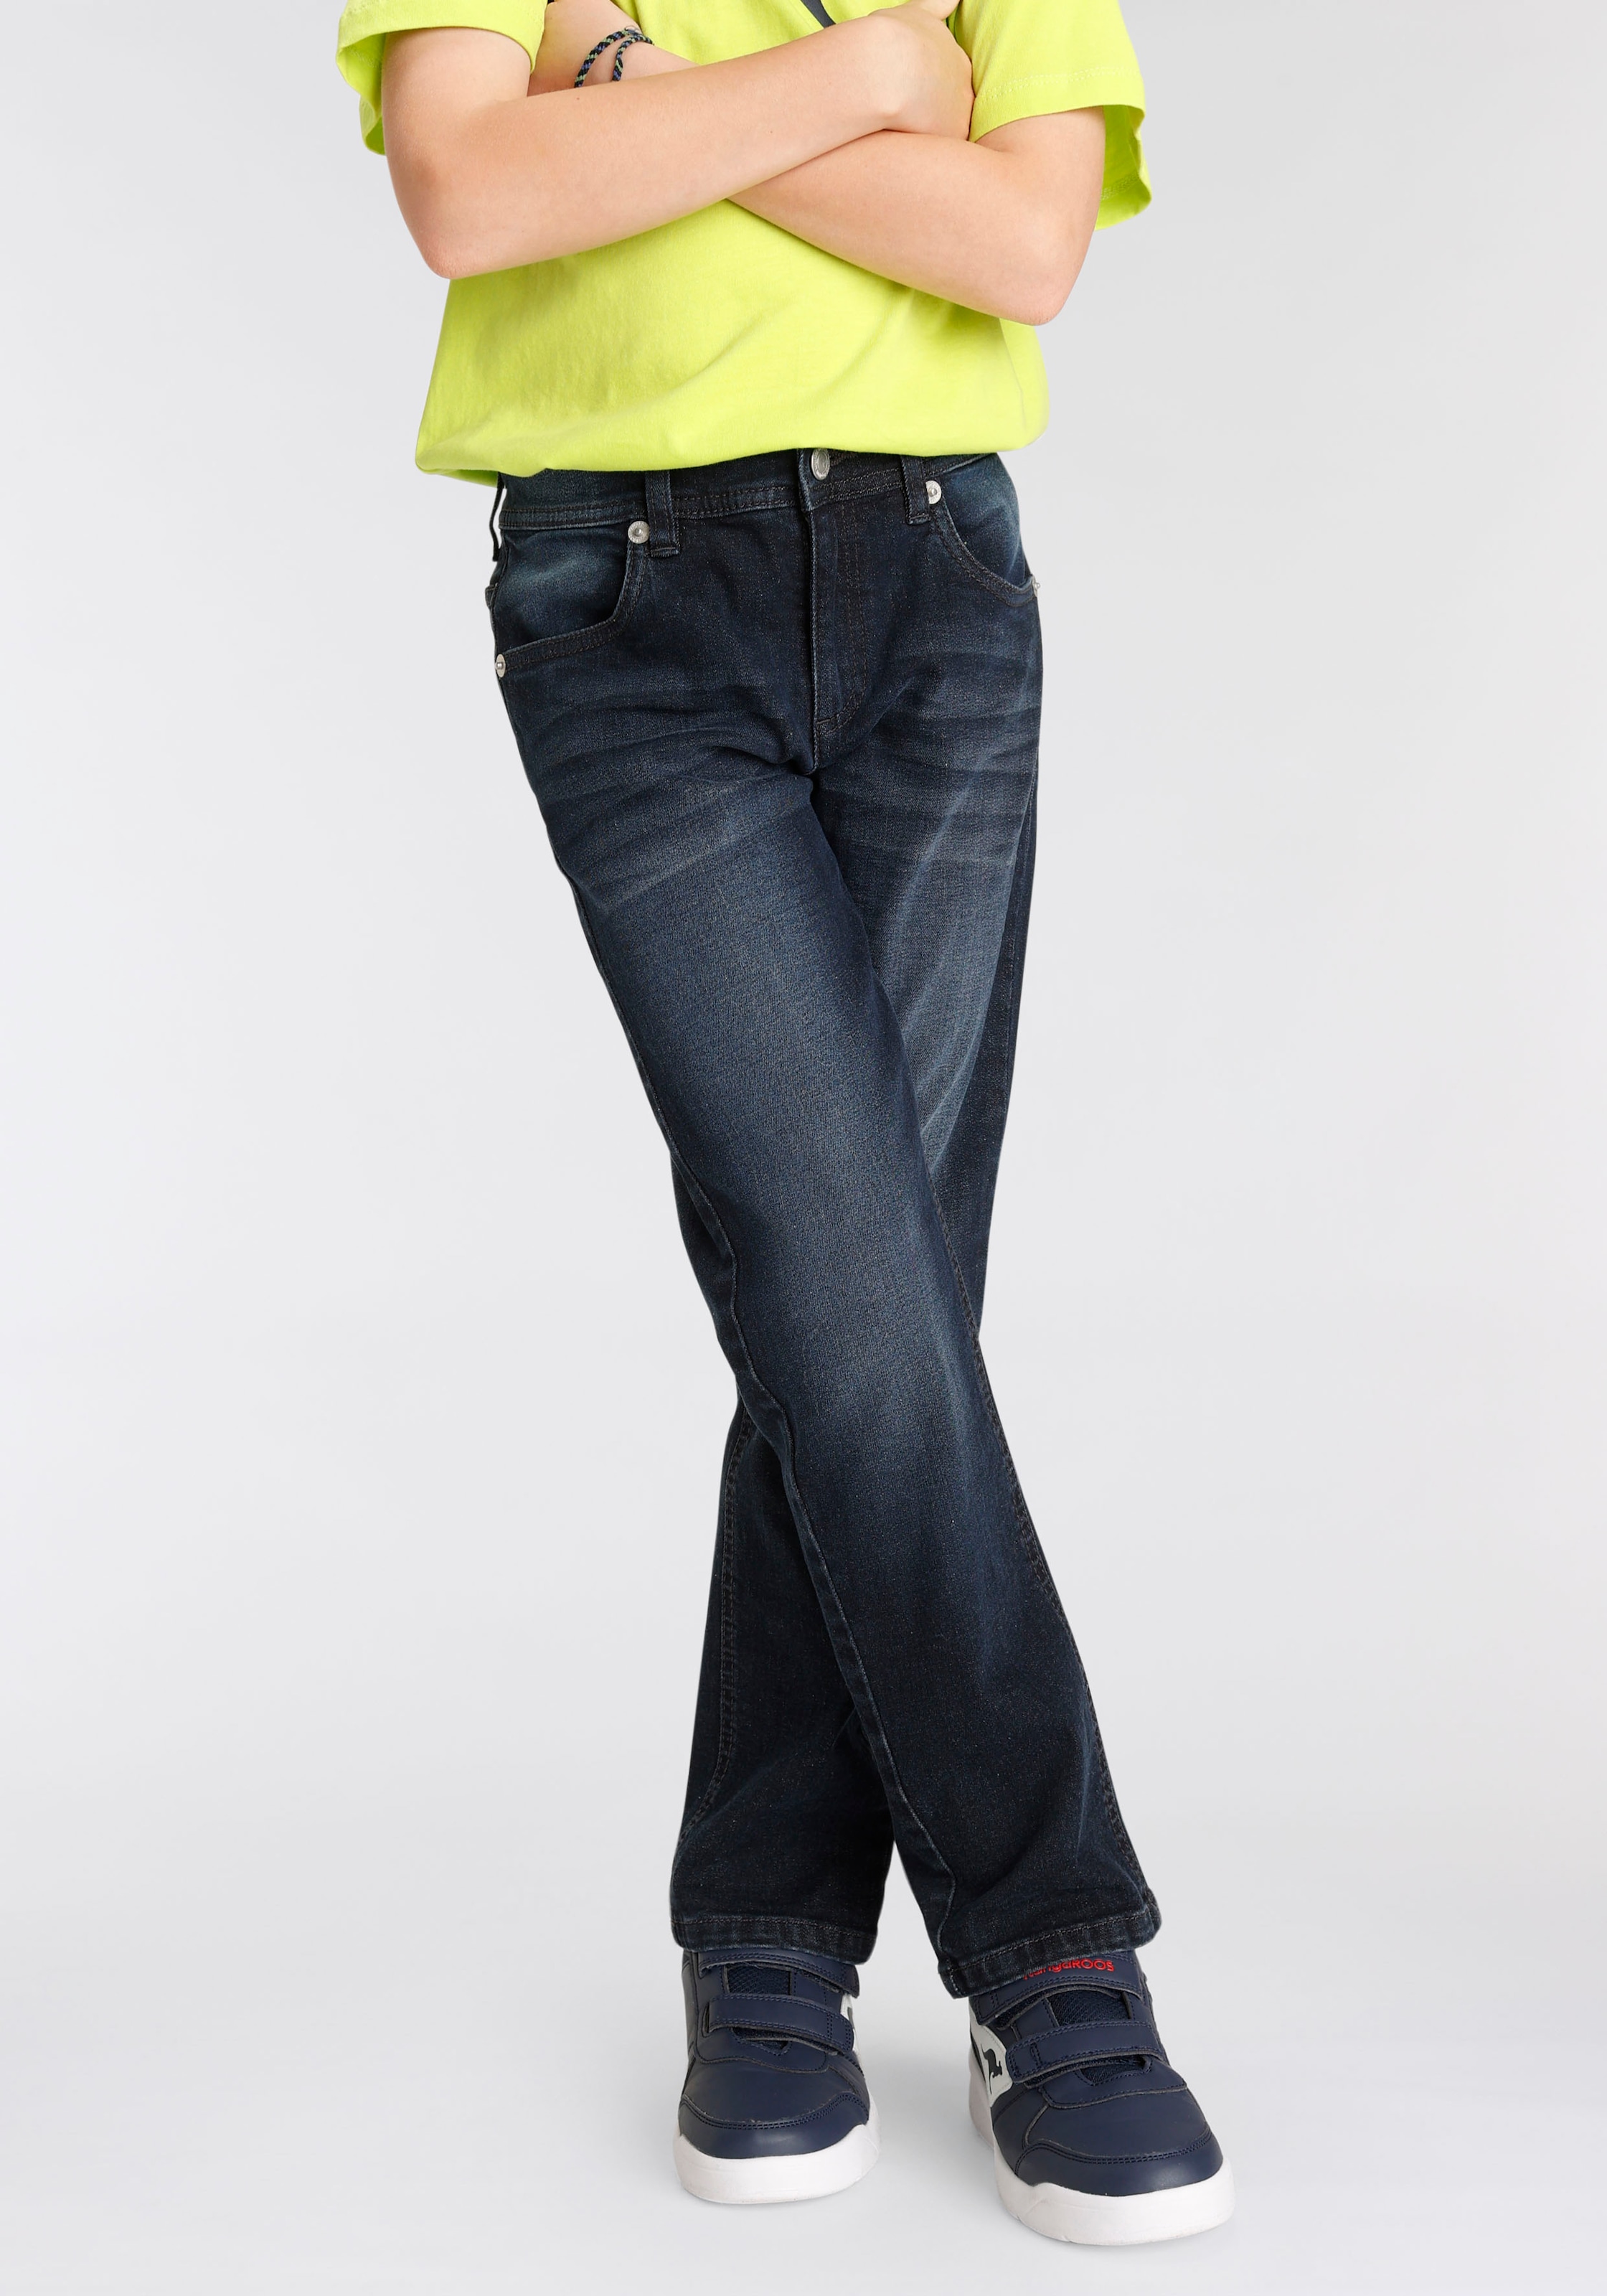 Große Rabatte! KangaROOS Stretch-Jeans kaufen », mit geradem regular Beinverlauf« fit online